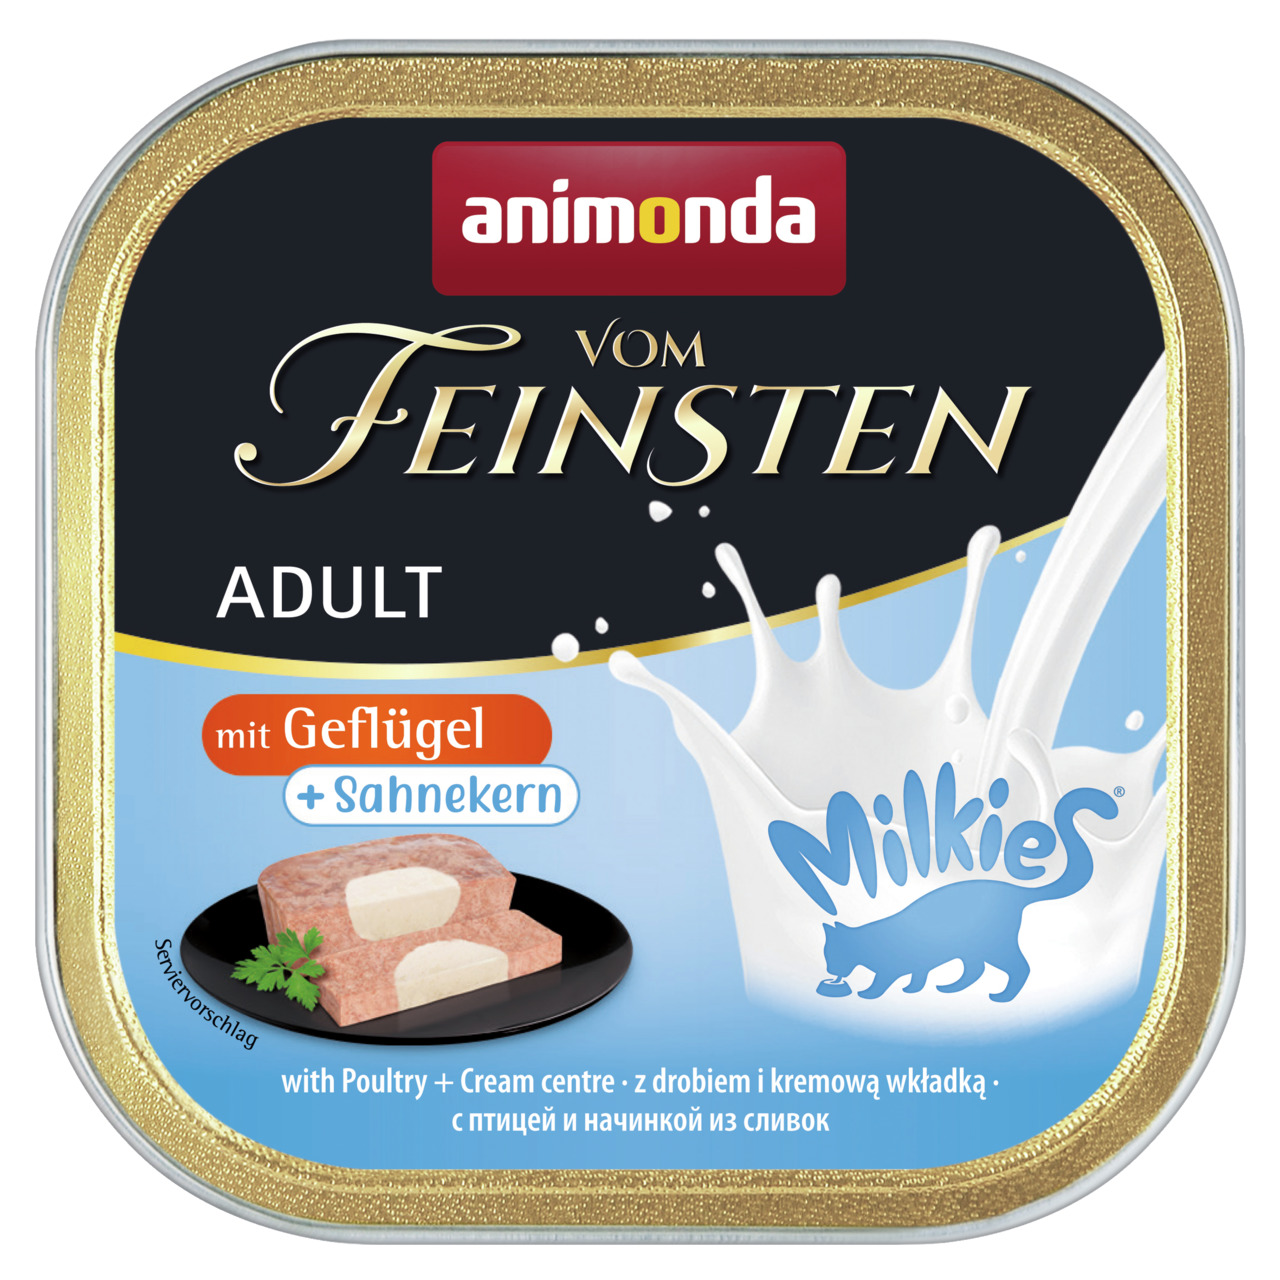 Animonda Vom Feinsten Adult mit Geflügel + Sahnekern Milkies Katzen Nassfutter 100 g